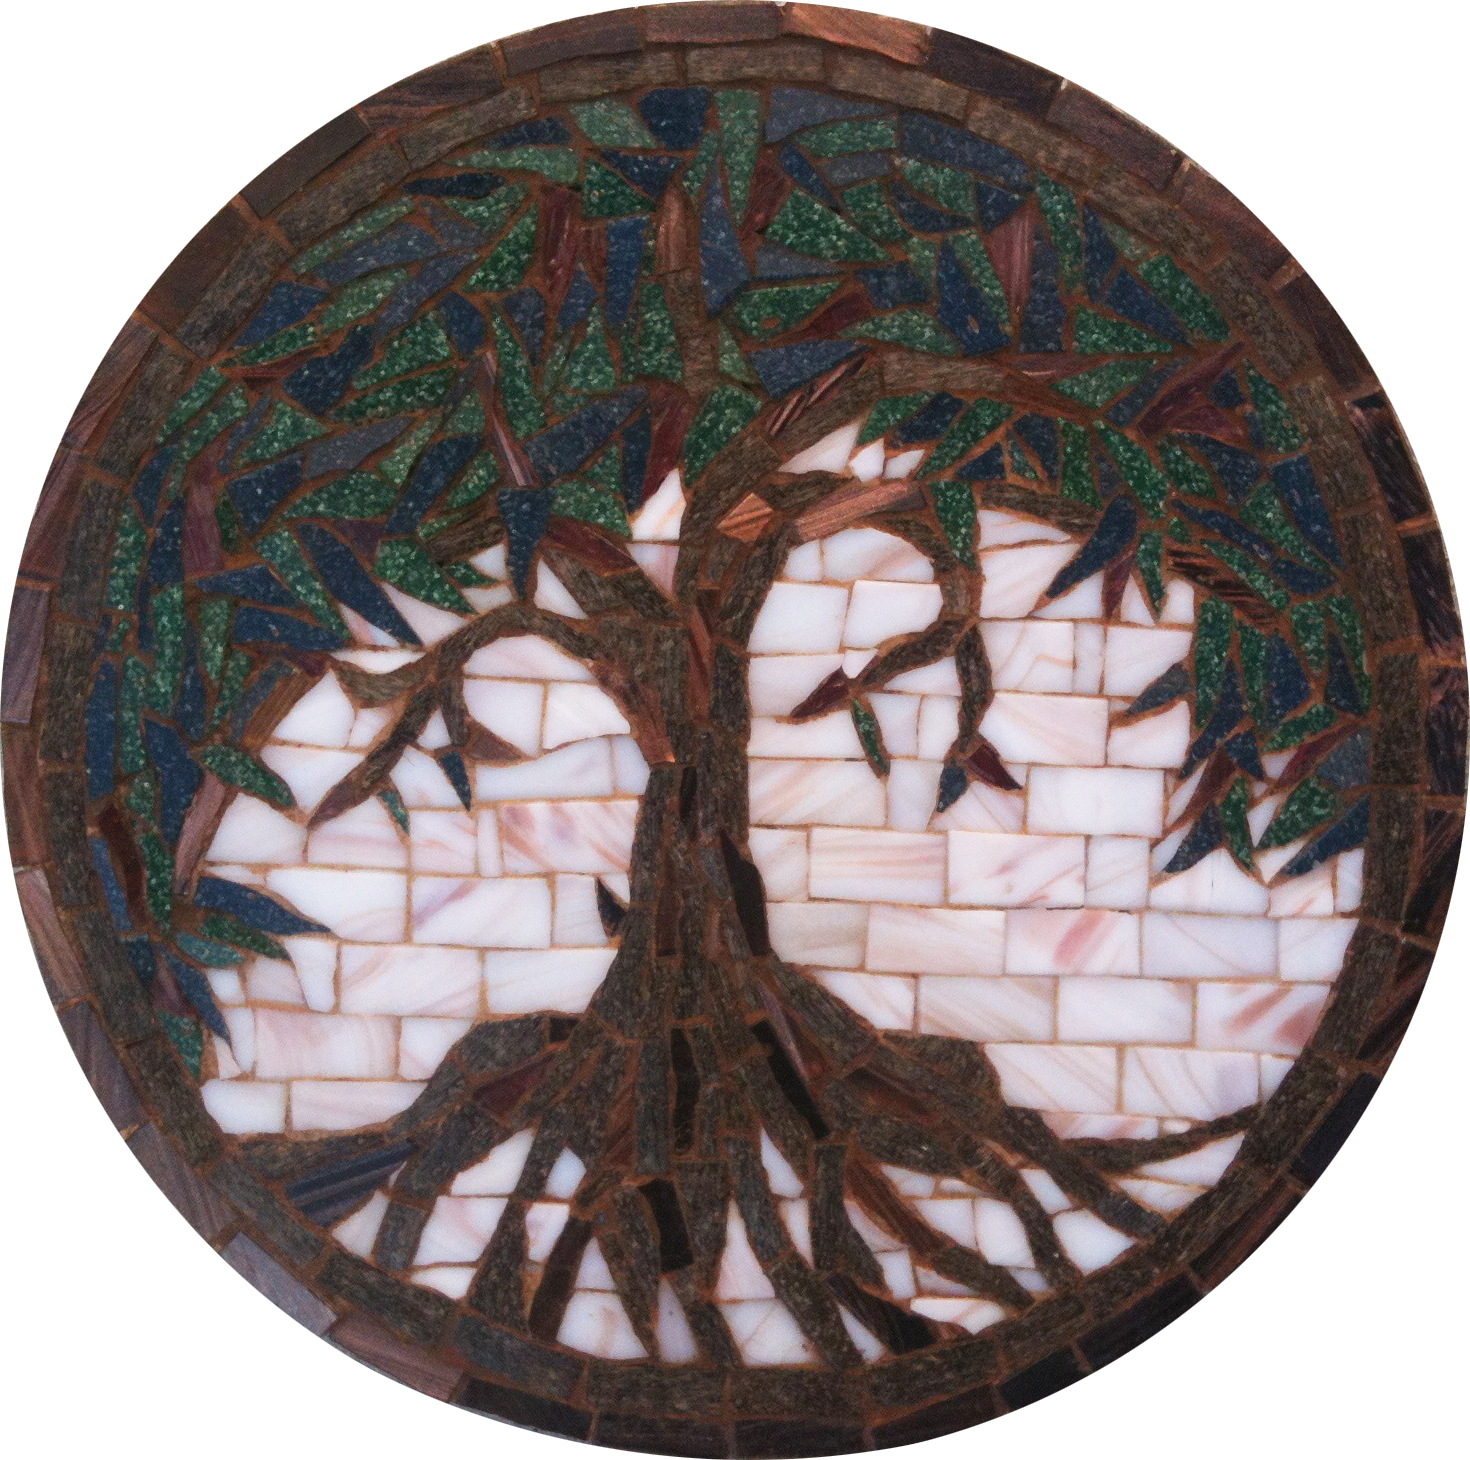 Miniature Mosaic Tree Medallion